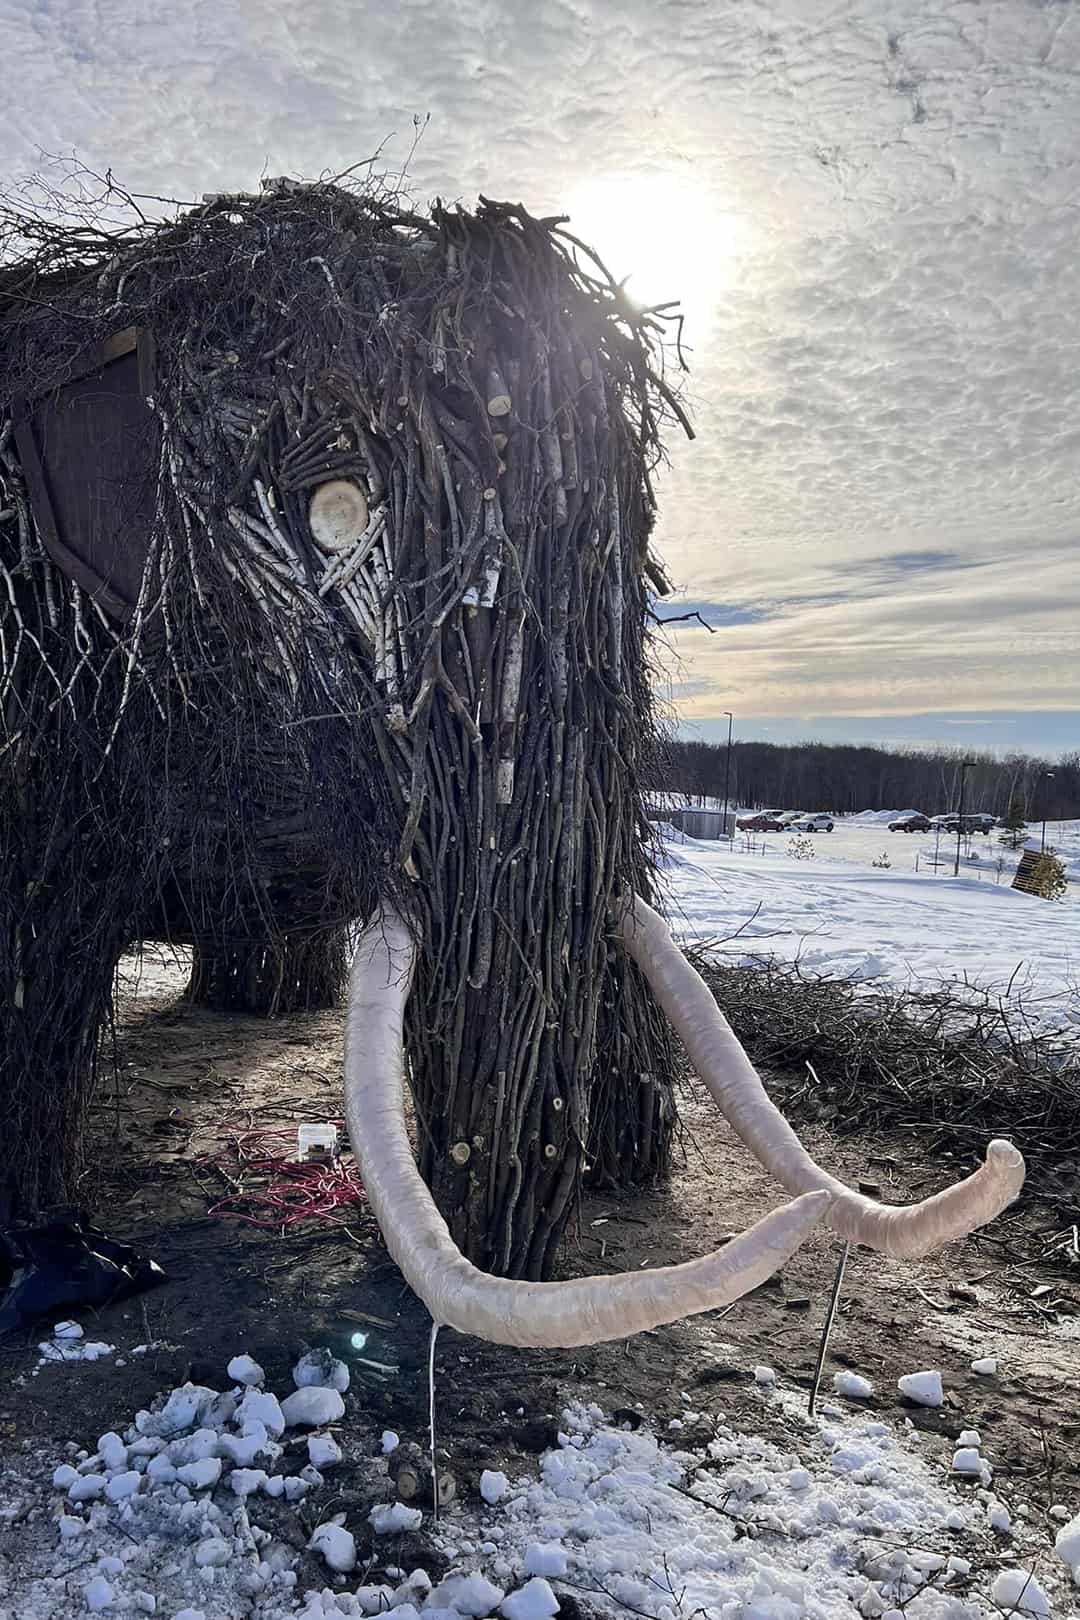 Mammoth sculpture